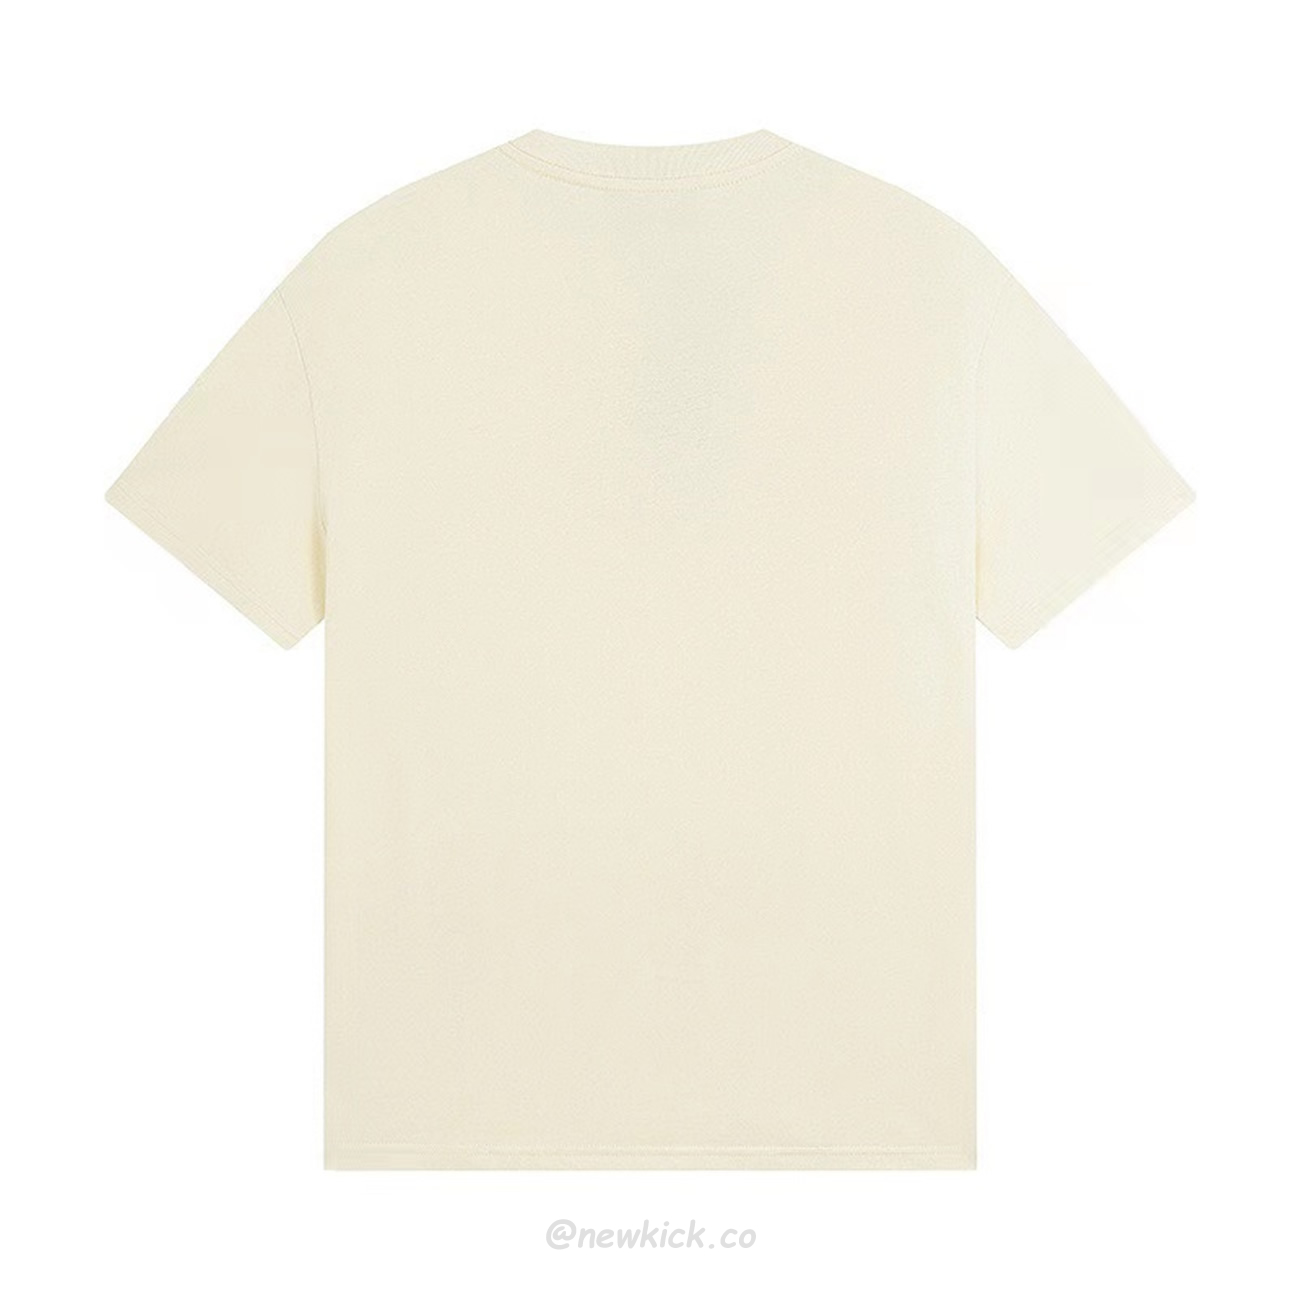 Gucci X Adidas Cotton Jersey T Shirt (2) - newkick.org